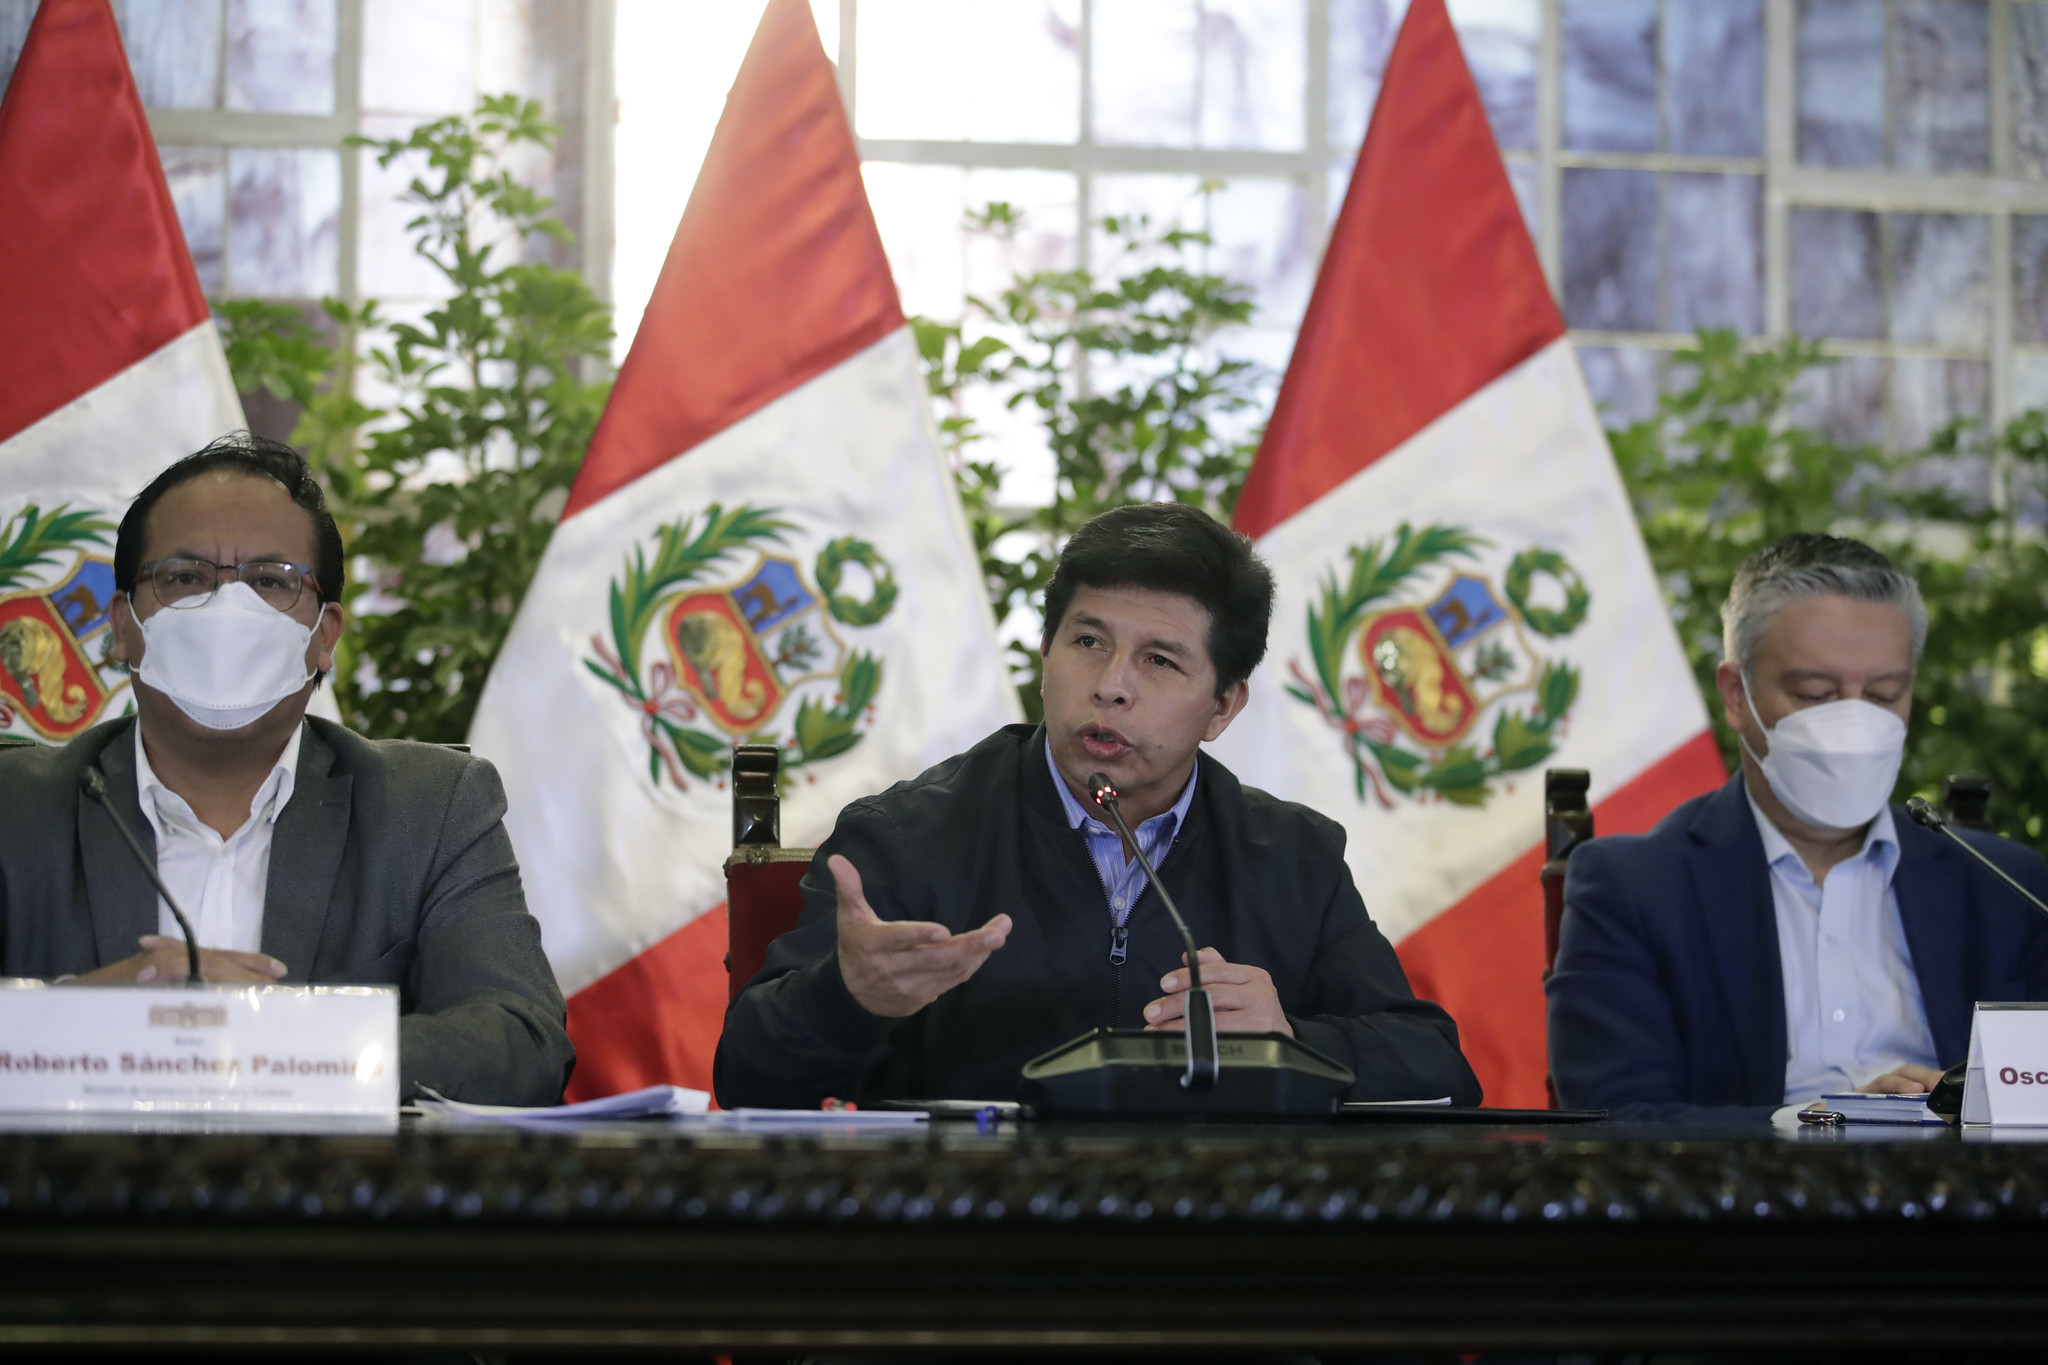 Congress rejects President Pedro Castillo’s bill to change Peru’s Constitution